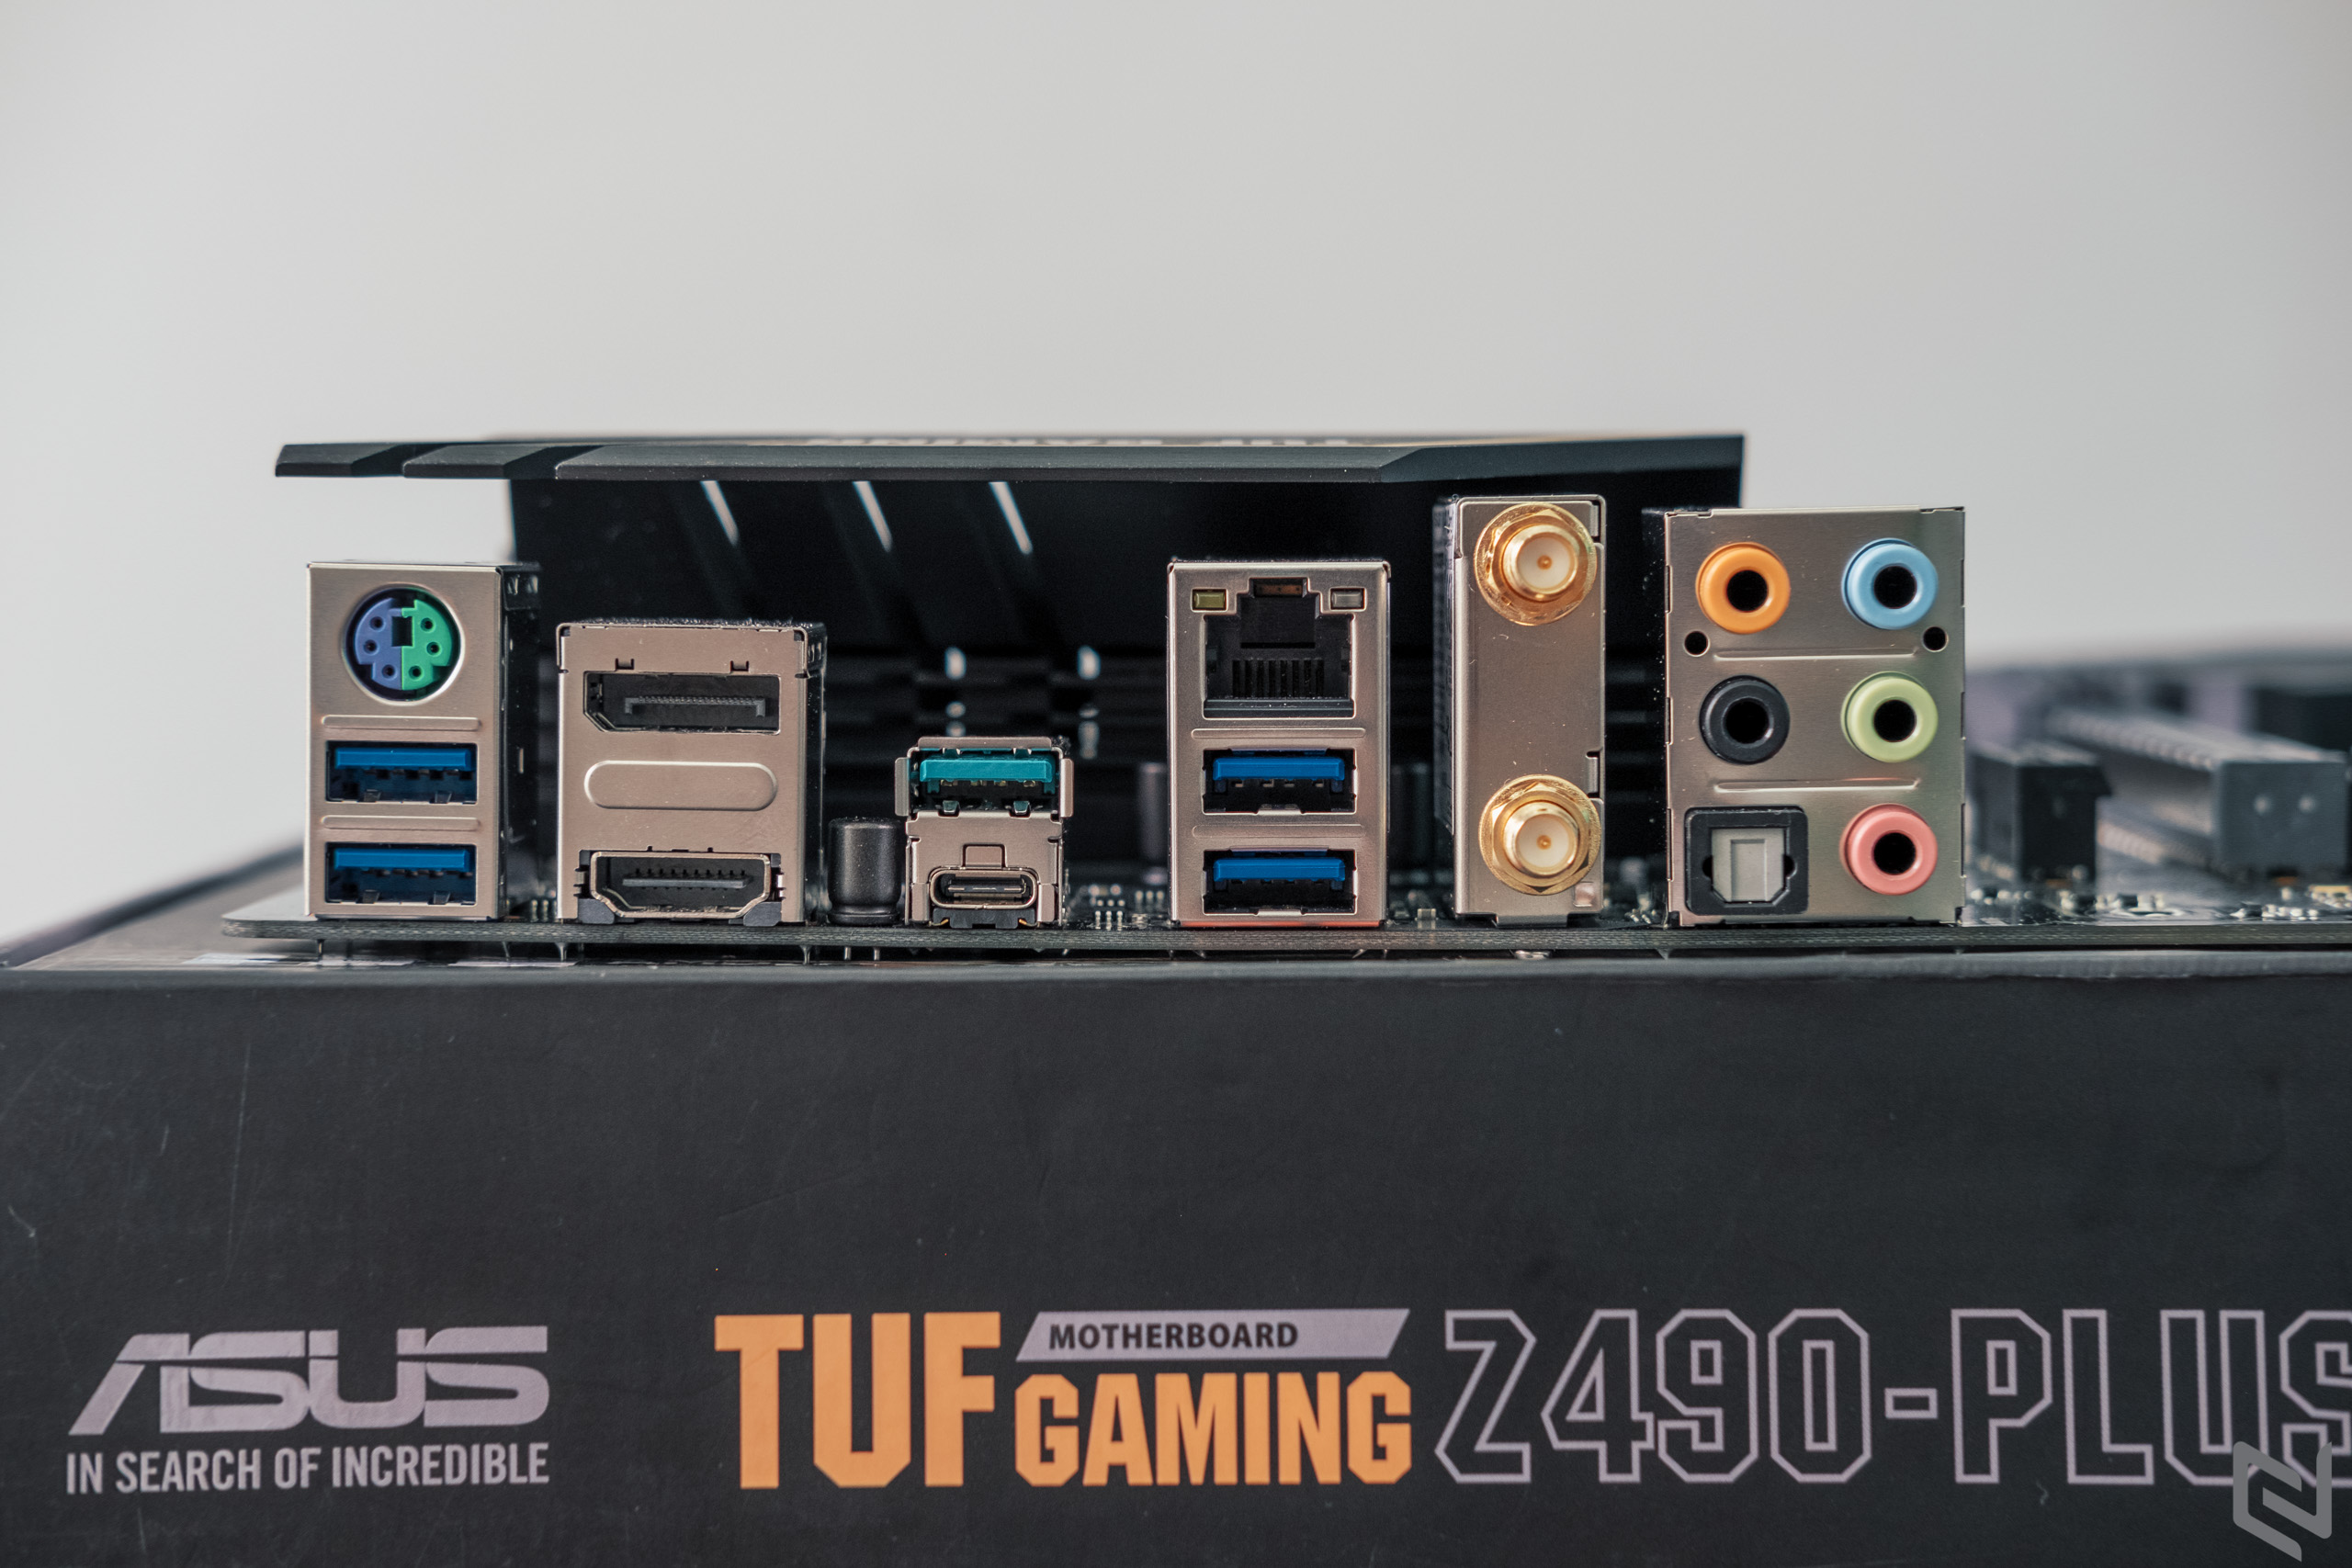 Mở hộp bo mạch chủ TUF Gaming Z490-Plus(WI-FI), cực bền bỉ với vẻ ngoài "cơ khí" cục mịch